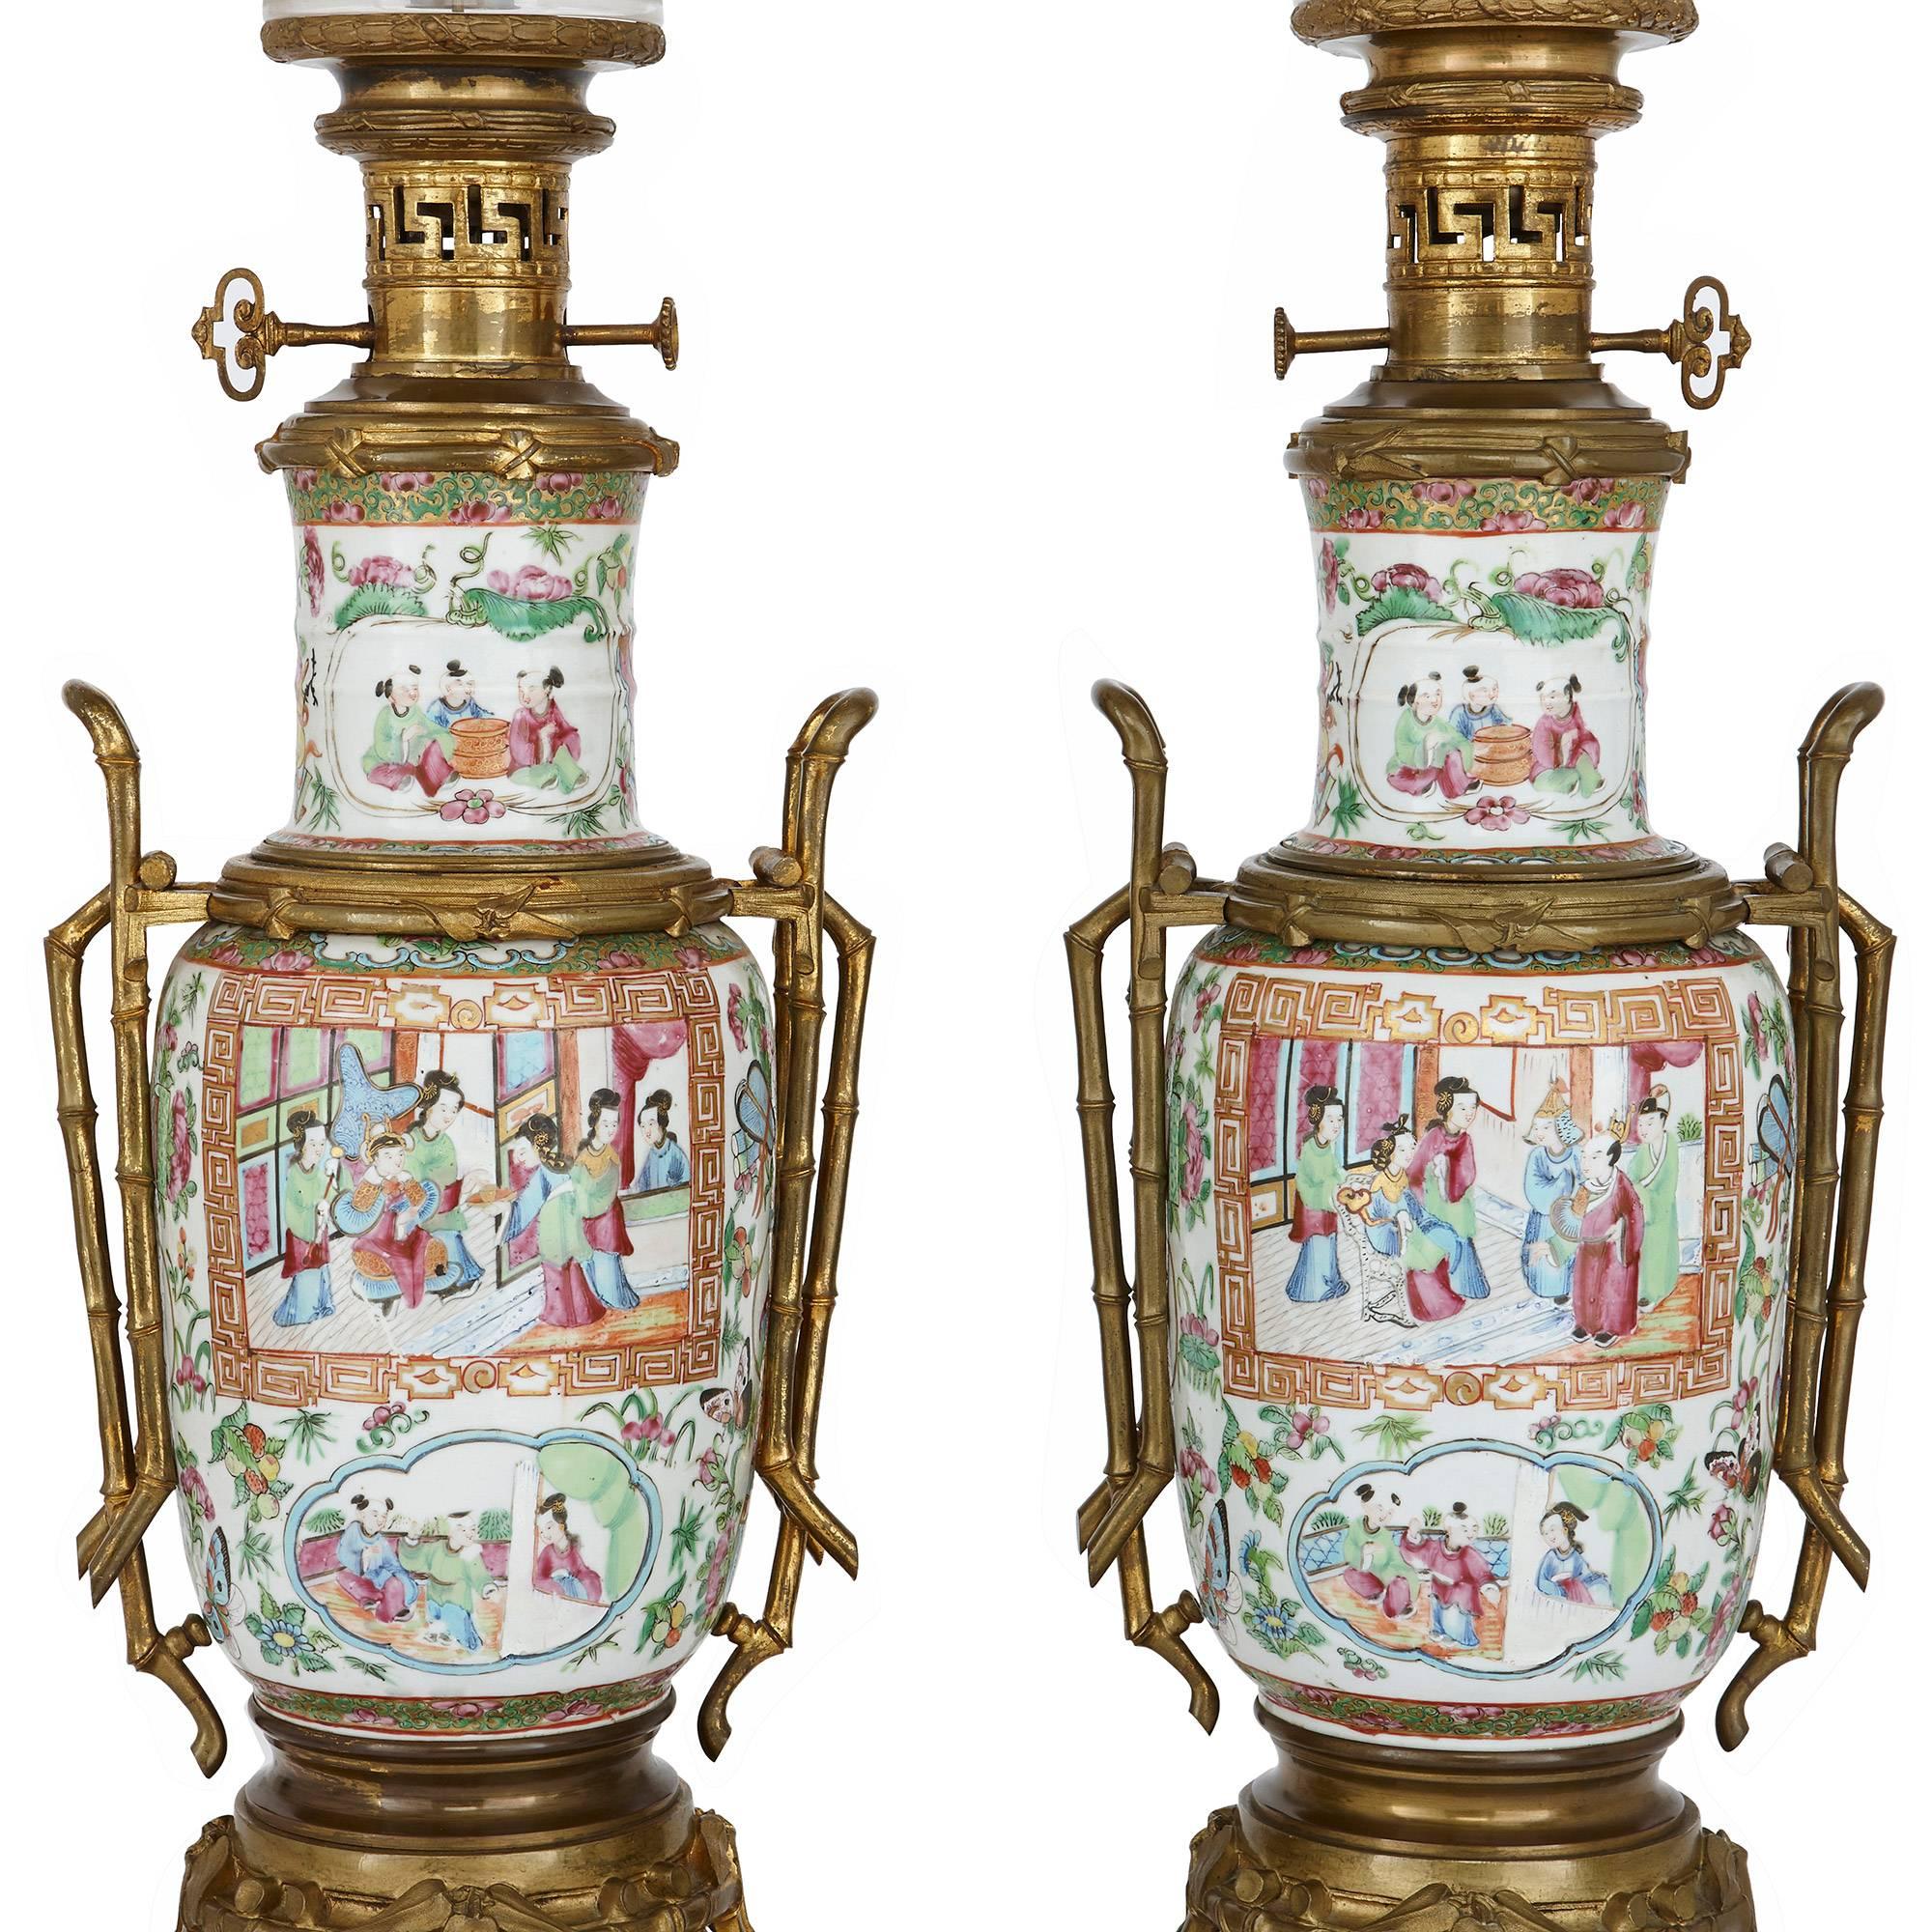 Diese eleganten Lampen sind aus chinesischem Canton famille rose-Porzellan gefertigt und mit französischer vergoldeter Bronze (Ormolu) gefasst. Die Lampen haben schöne vasenförmige Porzellankörper, die fein mit chinesischen Hofszenen sowie mit